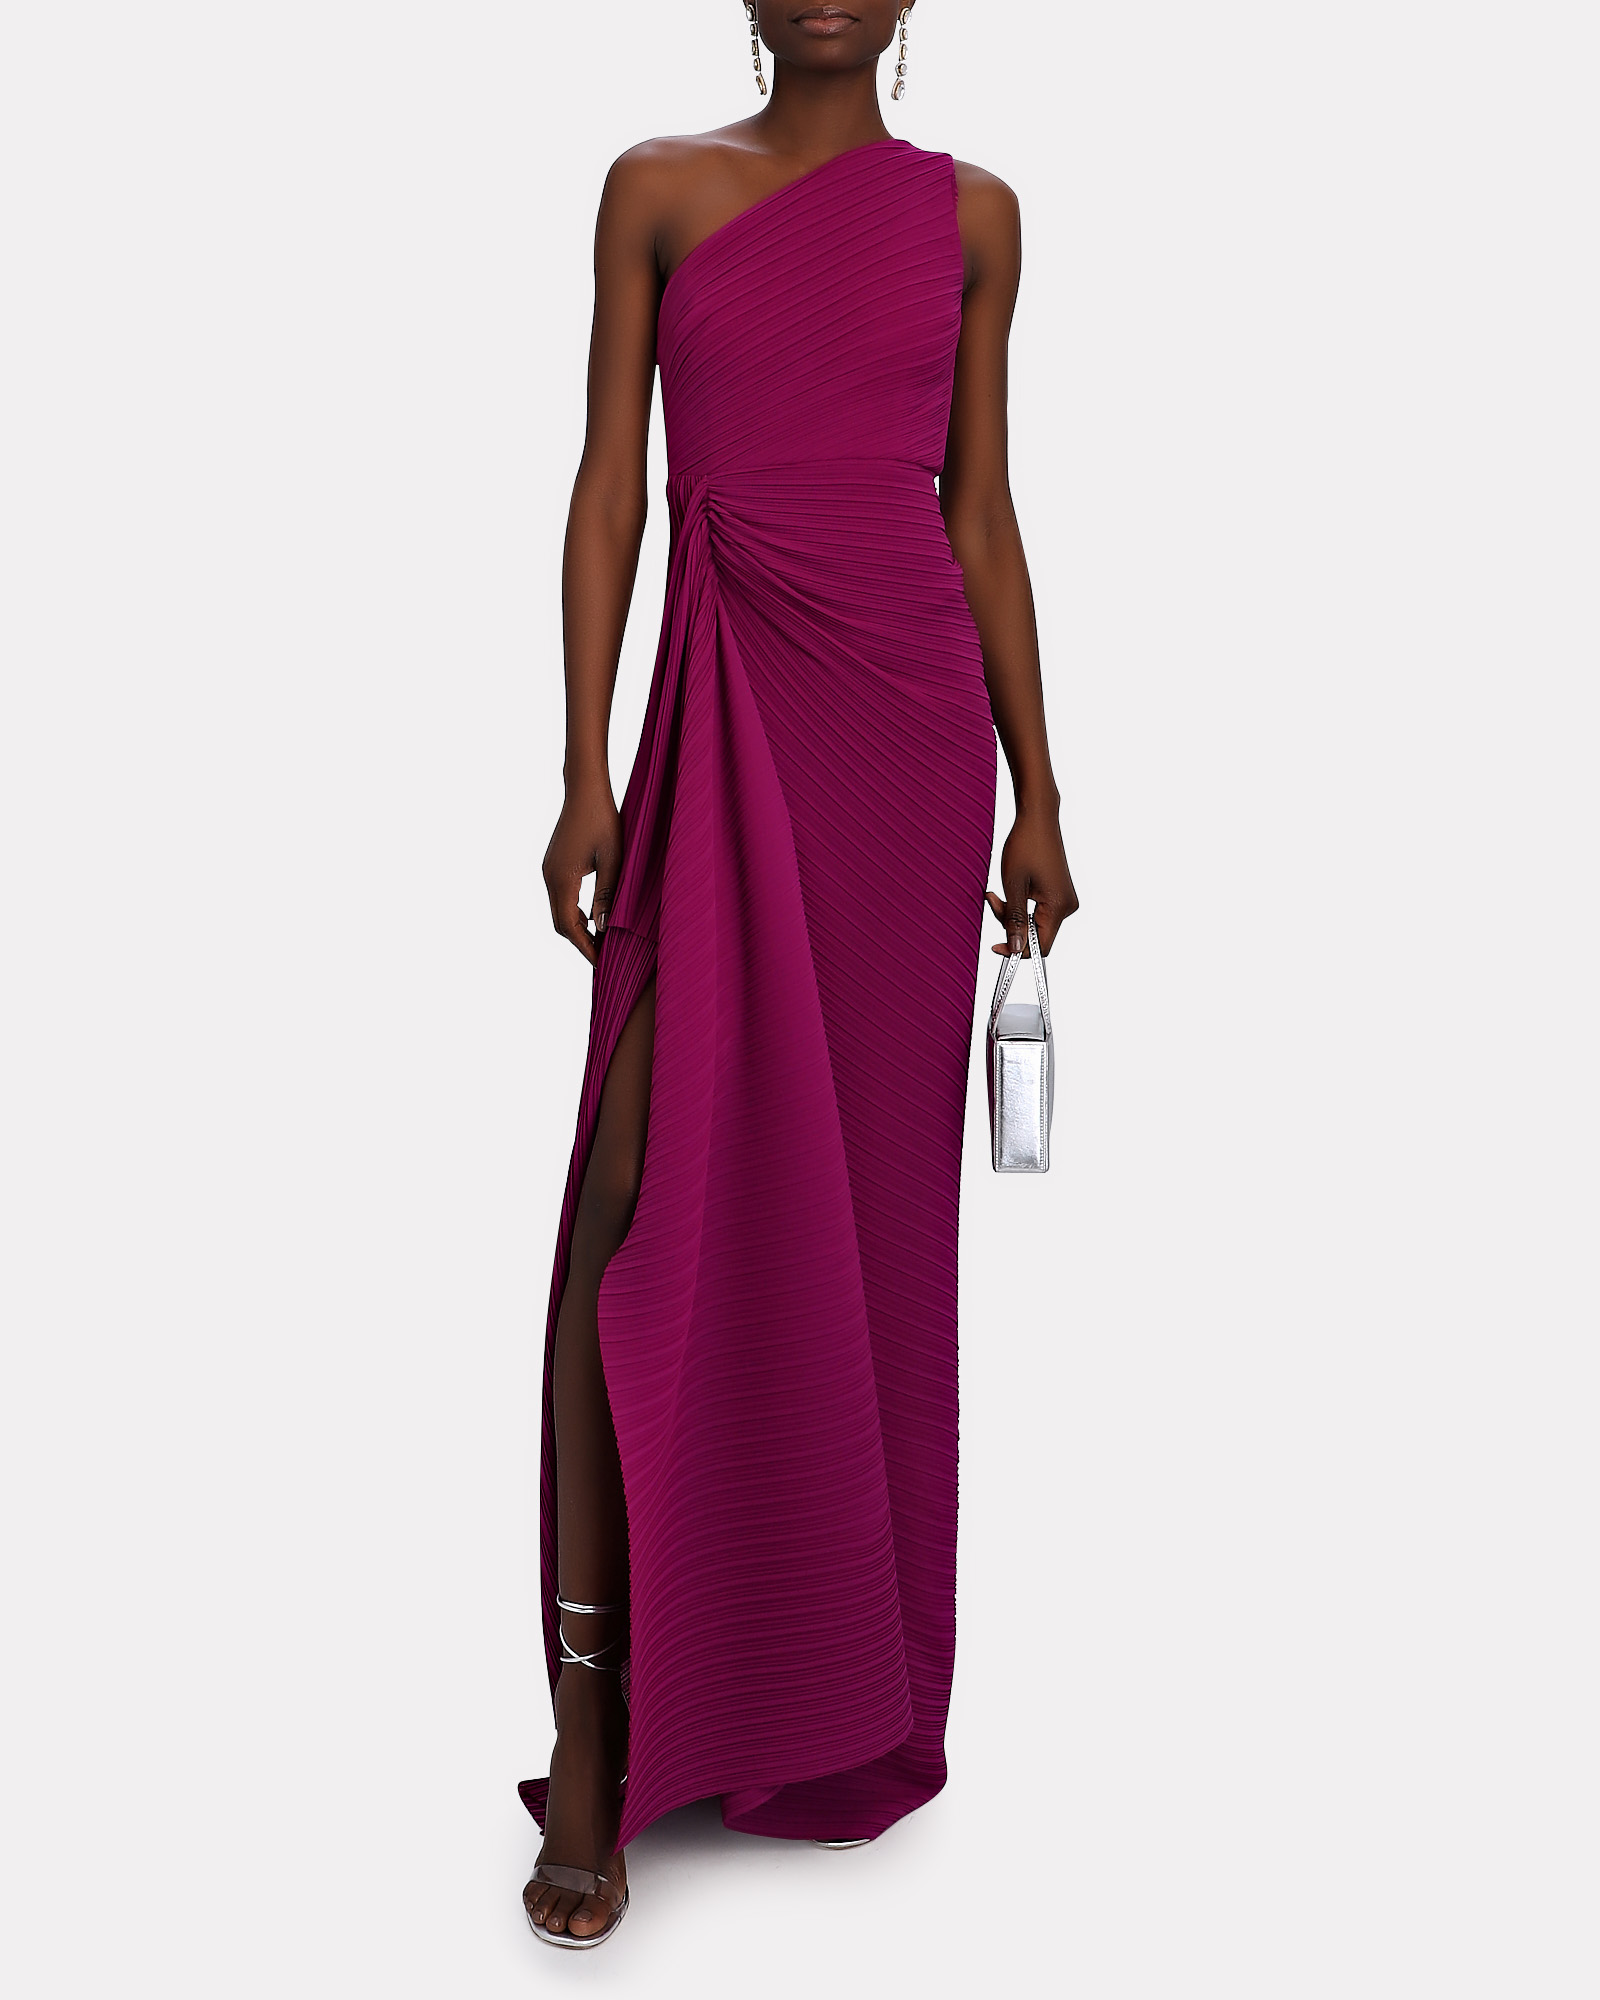 Solace London Dyas Plissé Crepe Maxi Dress | INTERMIX®